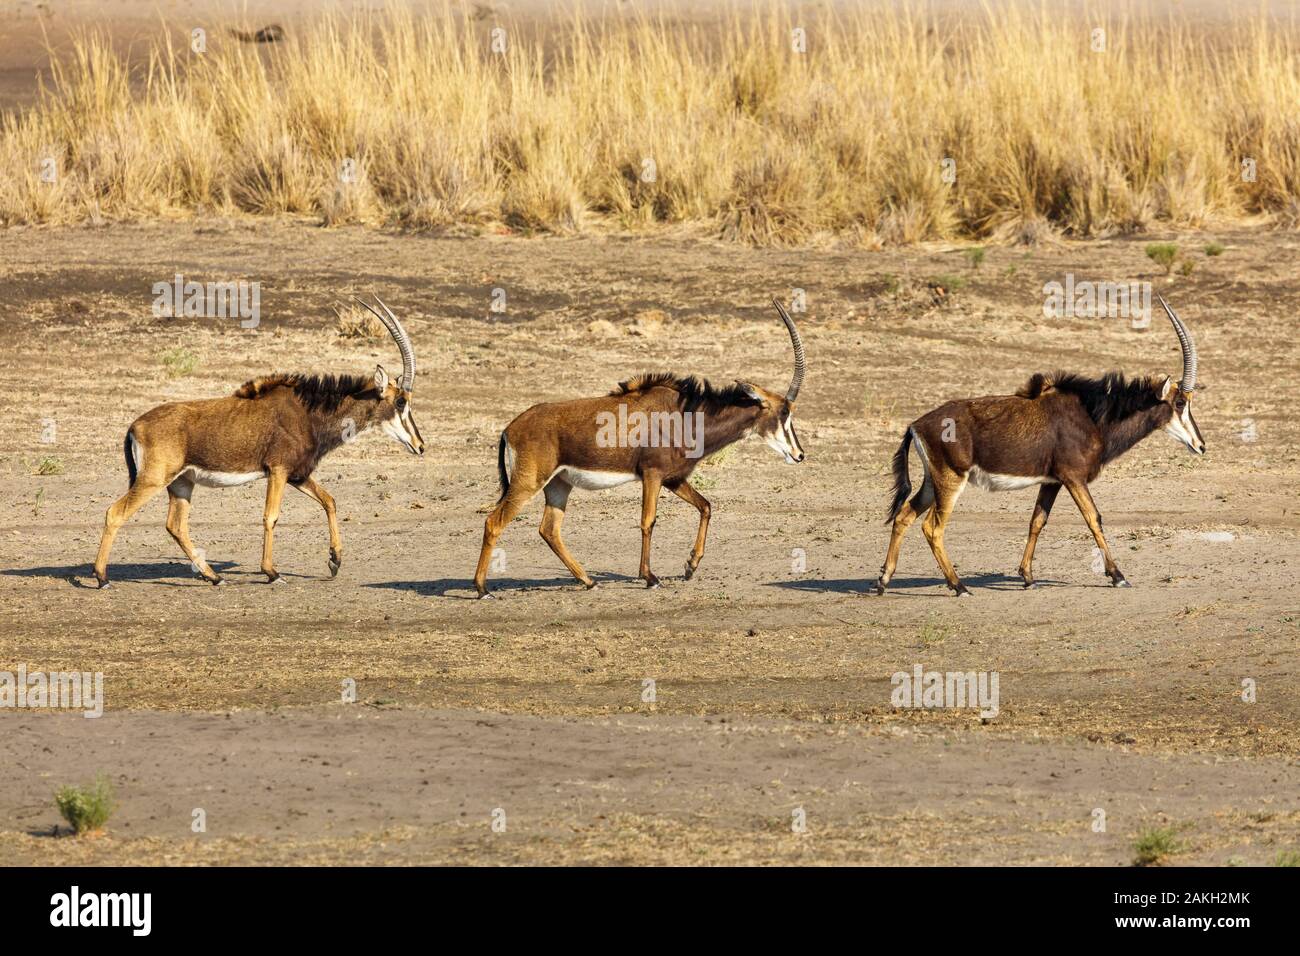 Namibia, Kavango province, Bwabwata National Park, sable antelopes female (Hippotragus niger) Stock Photo